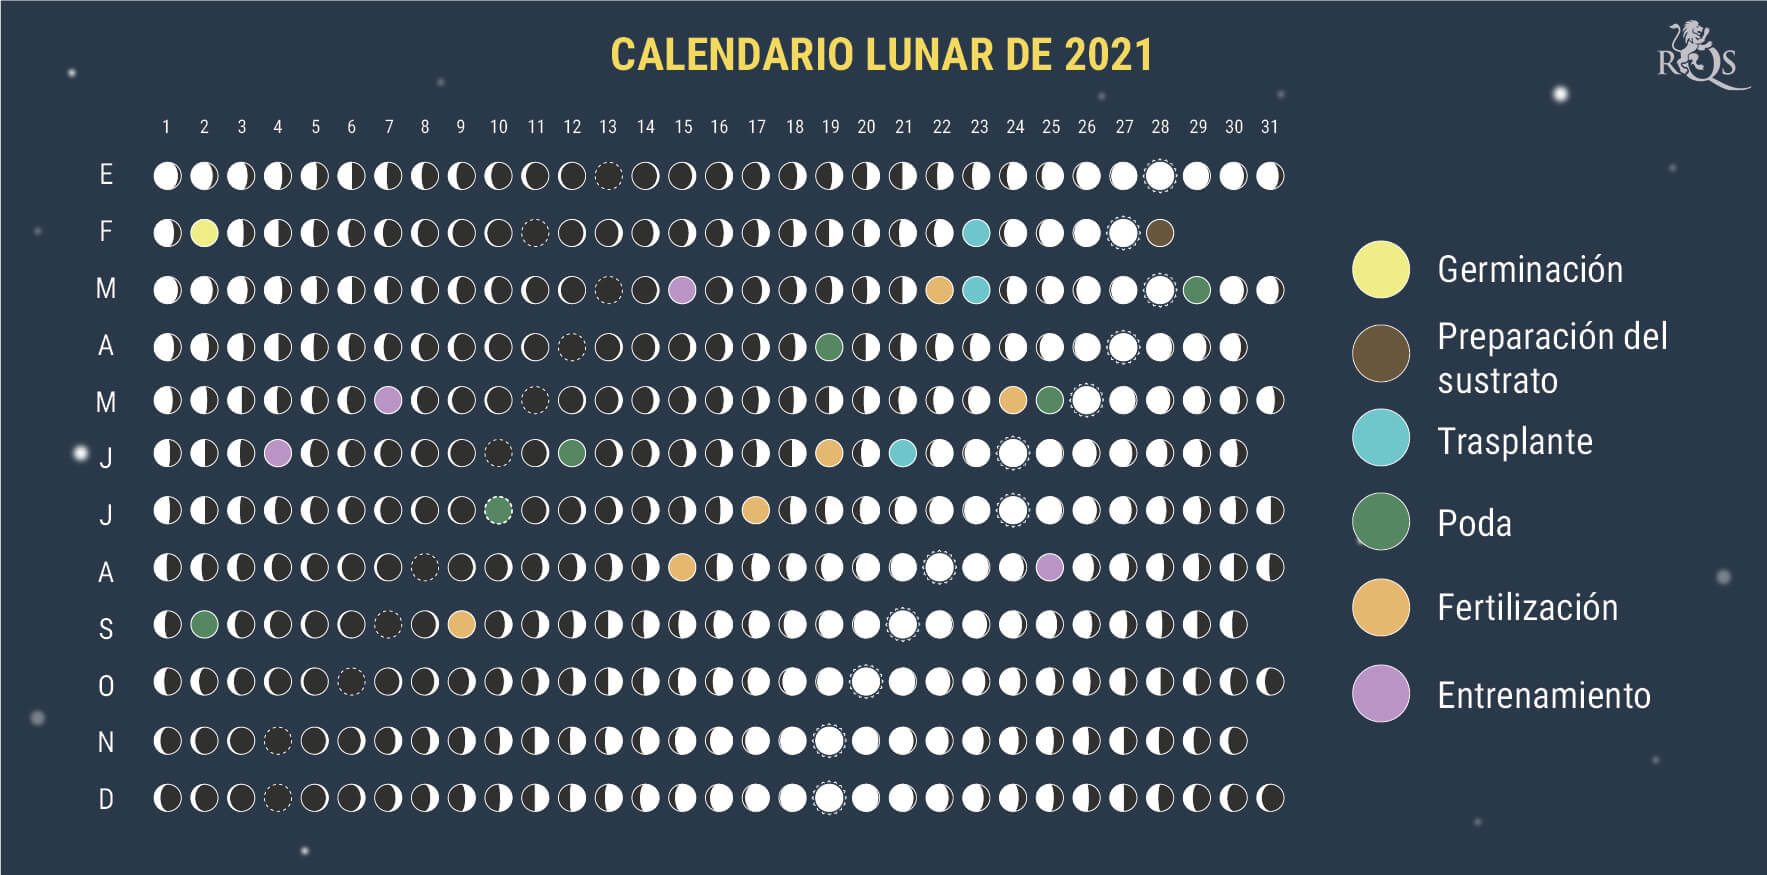 Cómo utilizar el calendario lunar de 2021 durante la temporada de cultivo